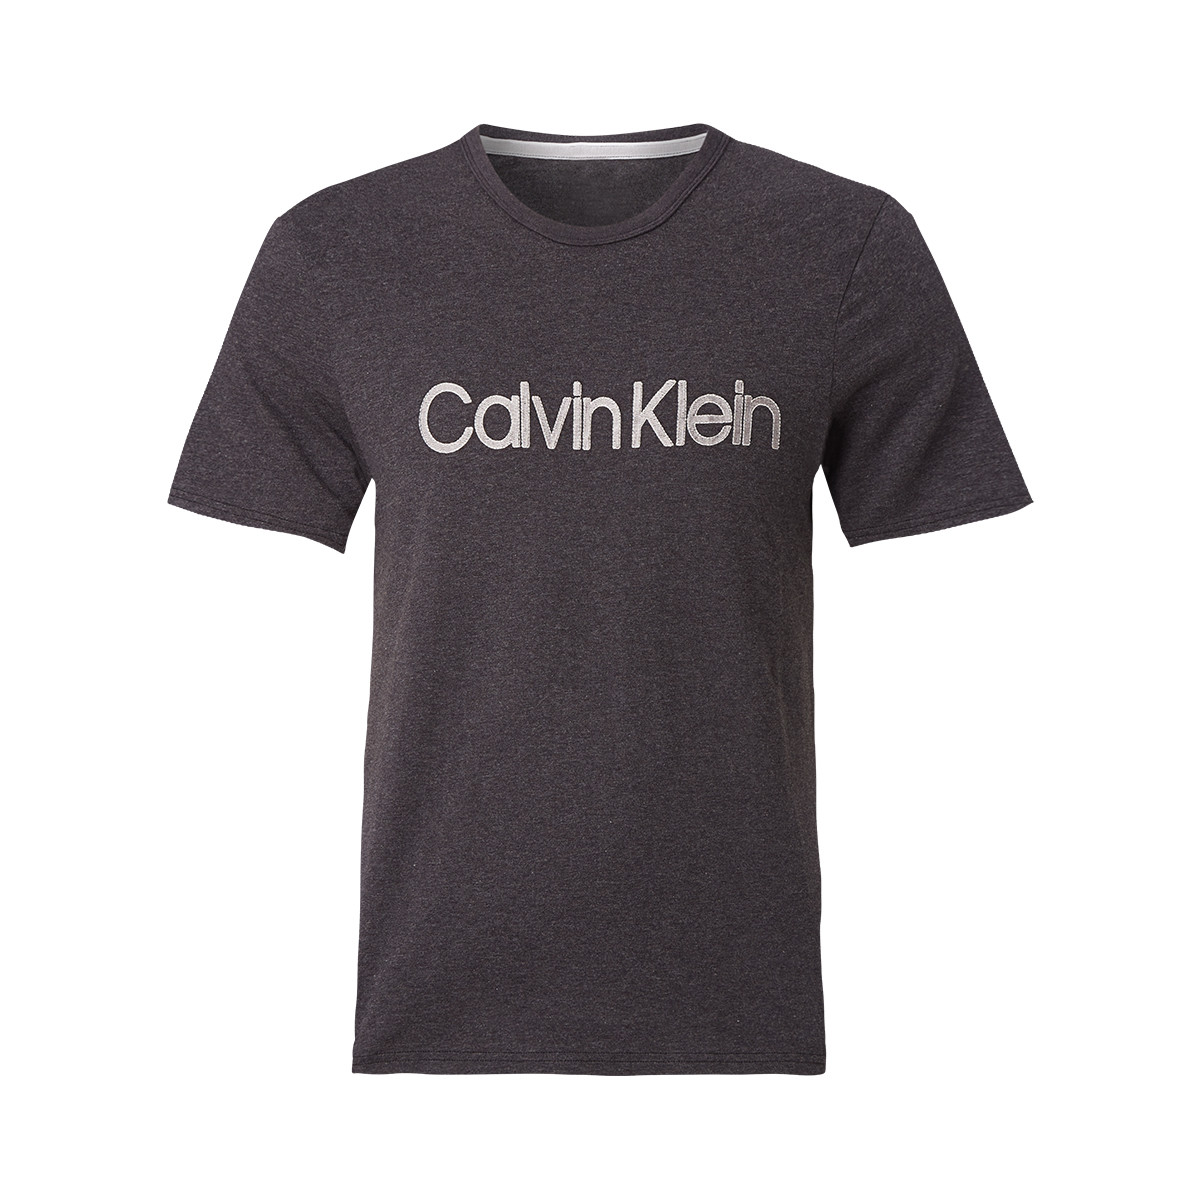 Billede af Calvin Klein T-shirt, Farve: Heather, Størrelse: S, Dame